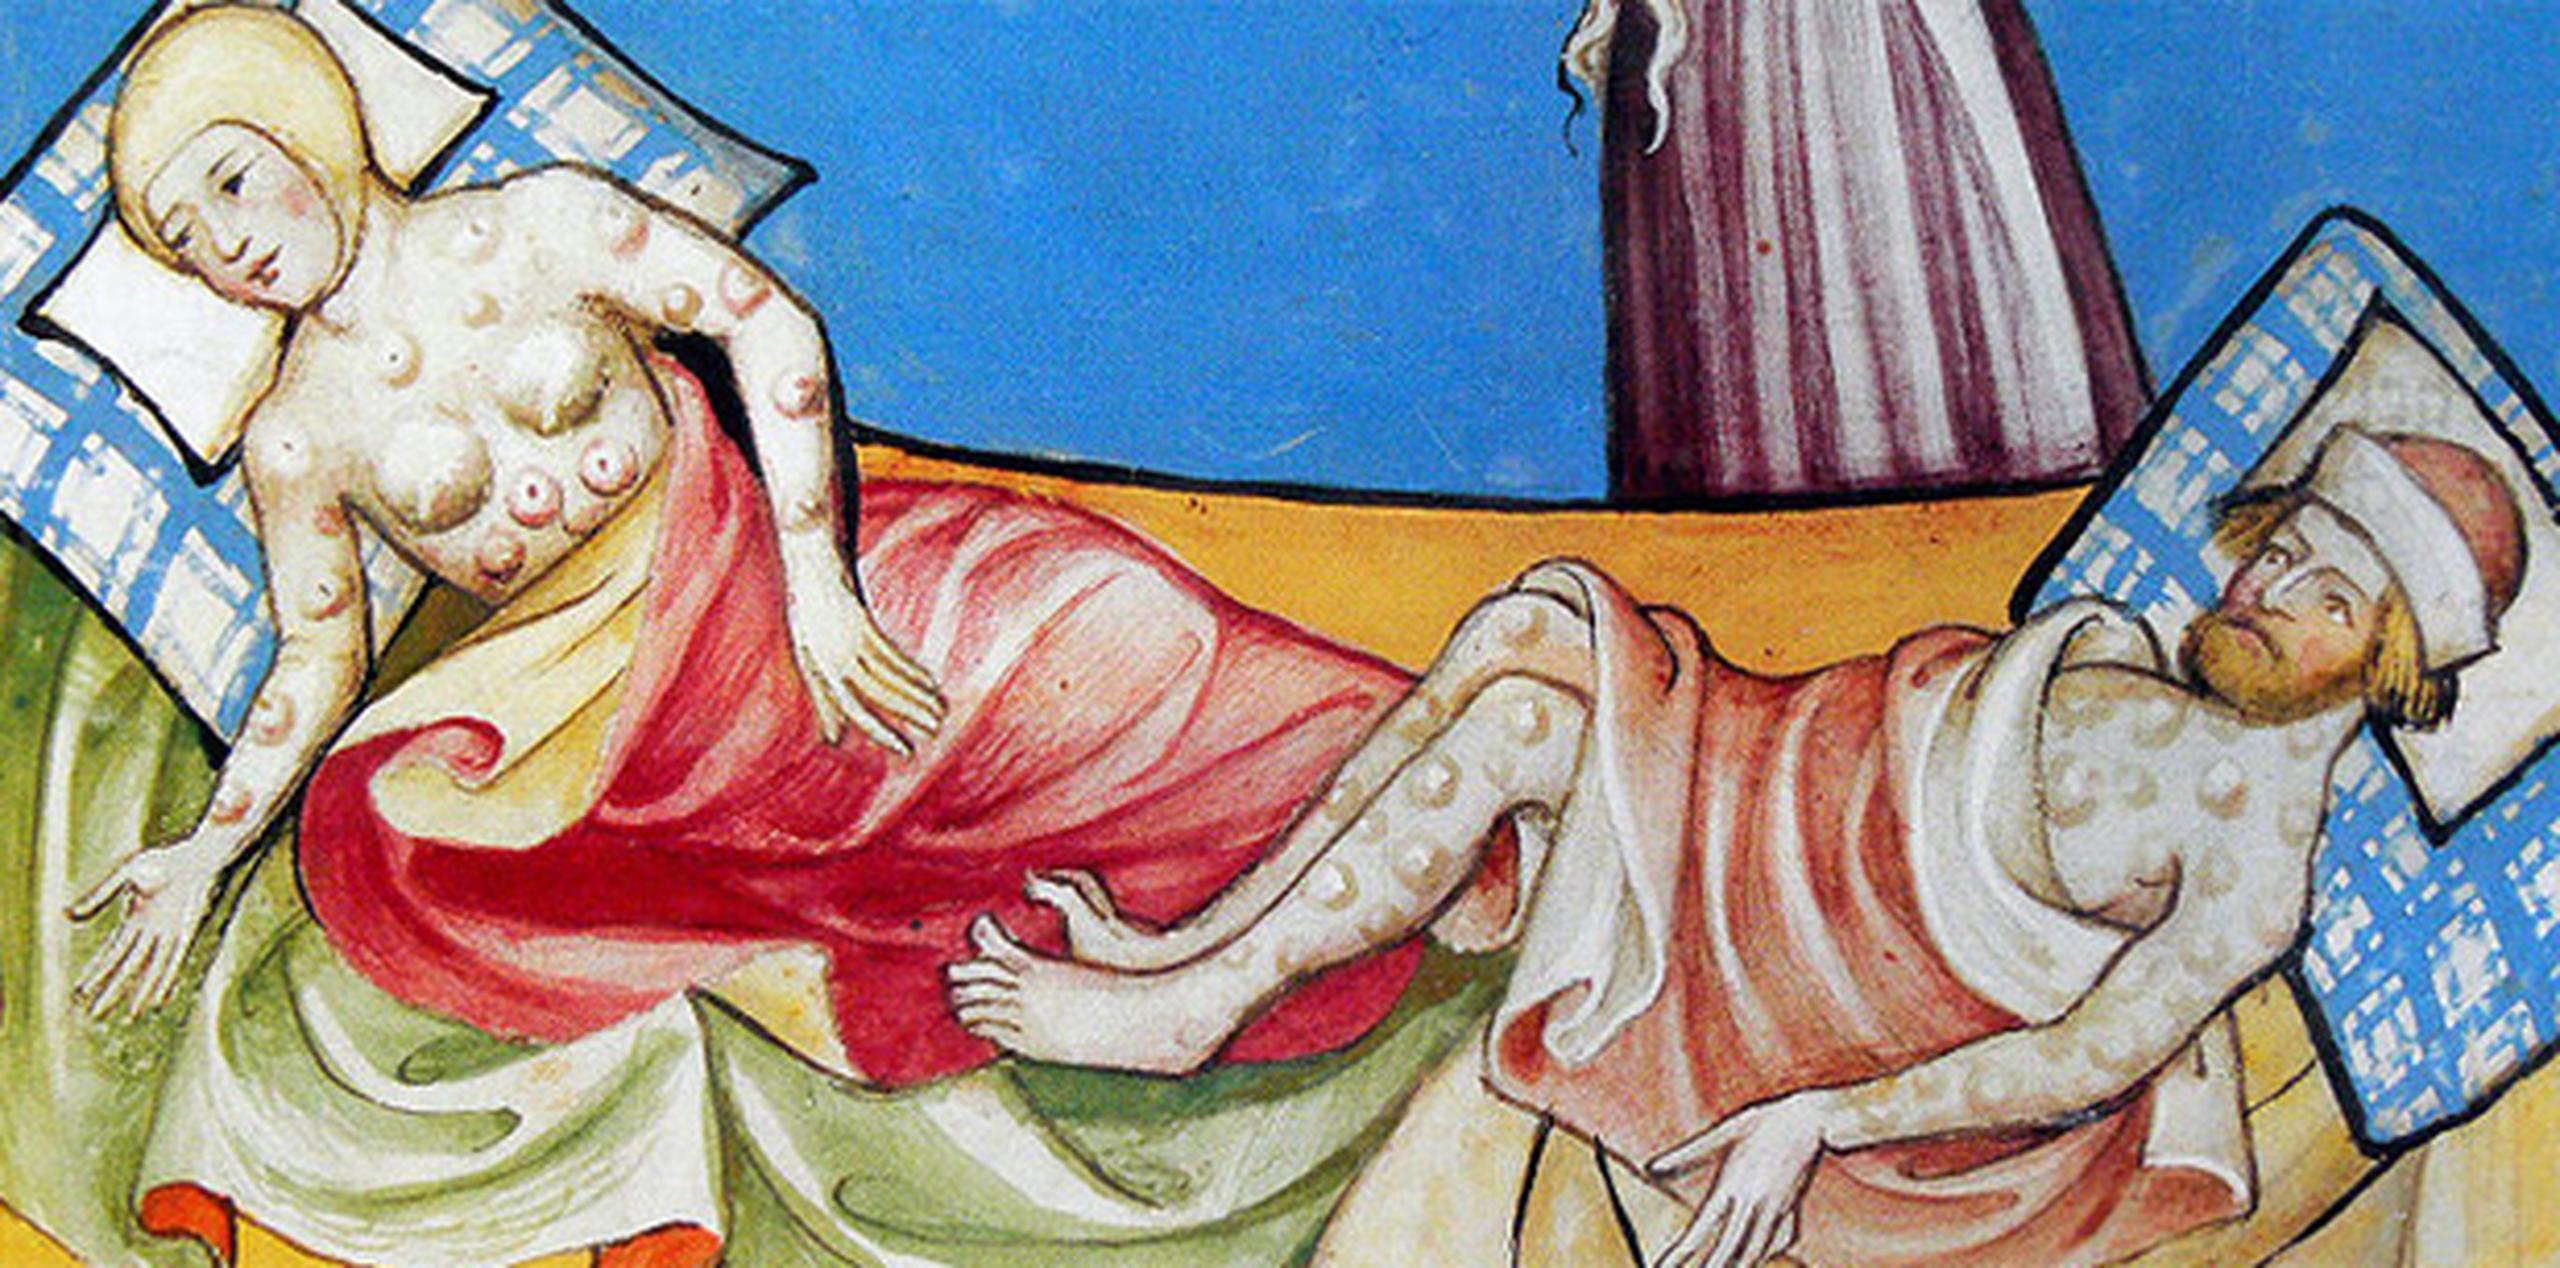 Ilustración de la Peste Negra realizada en 1411. (Wikipedia)